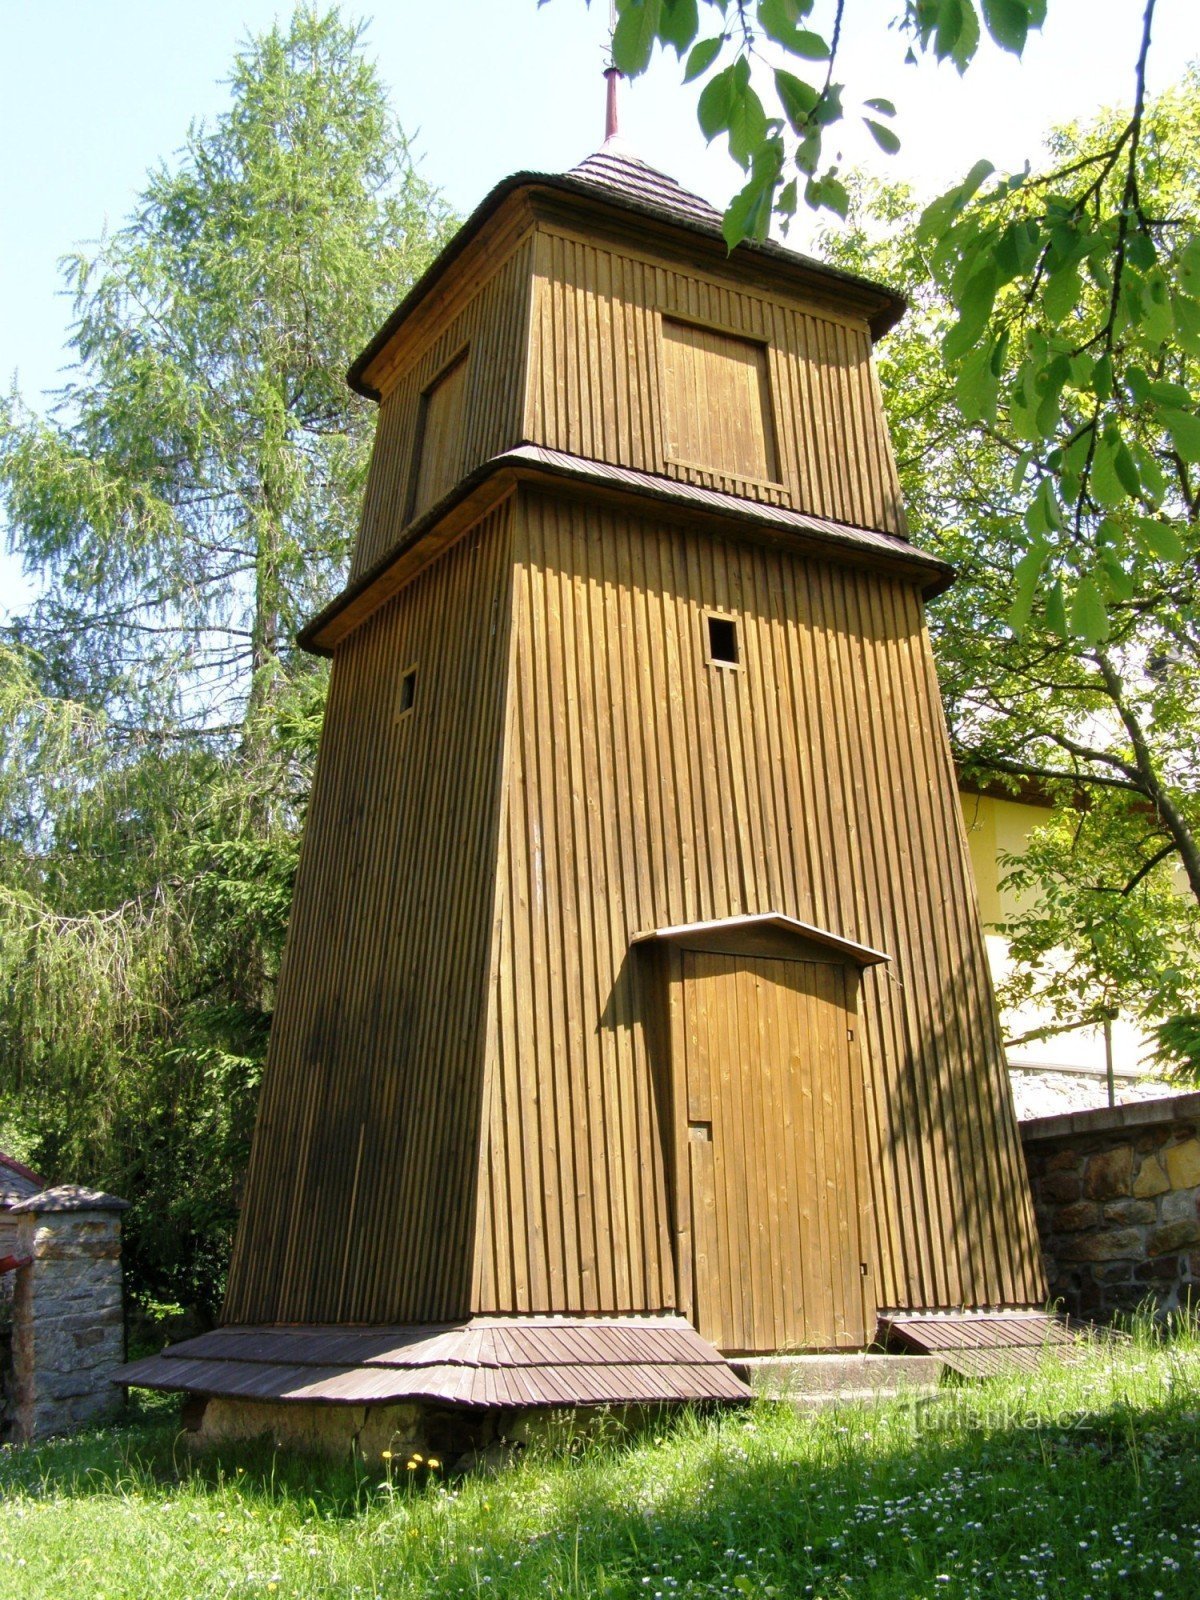 Bělá - igreja com torre sineira